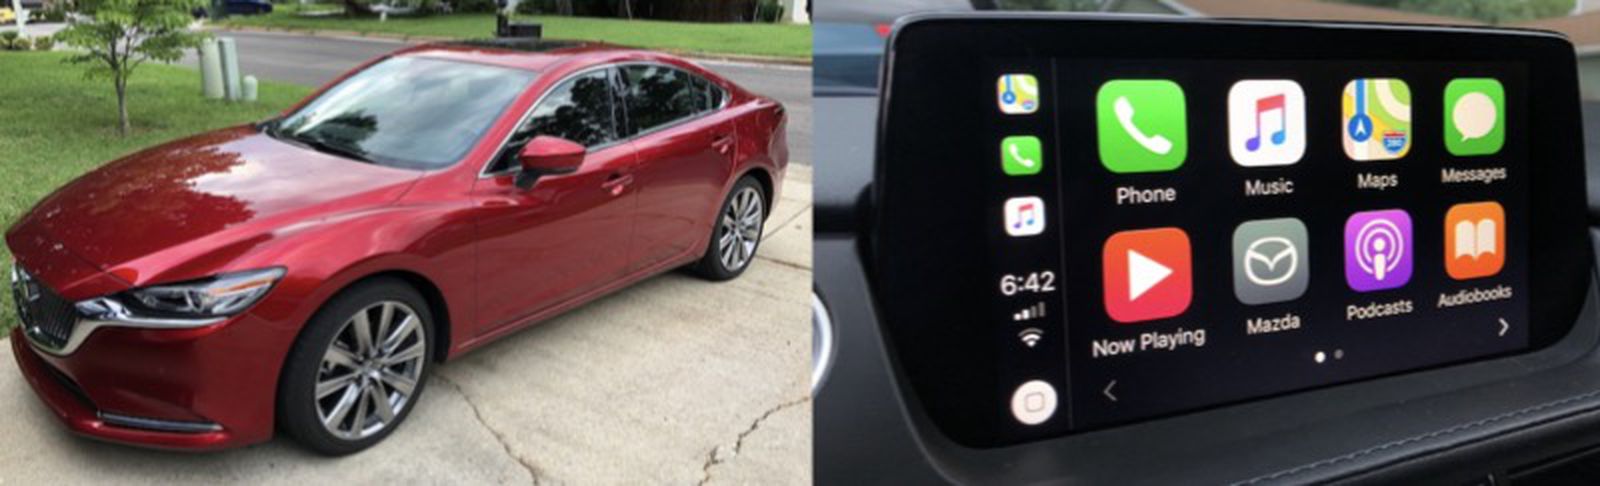  Revisión: CarPlay de Mazda admite una adición bienvenida para los usuarios de iPhone-Pysnnoticias